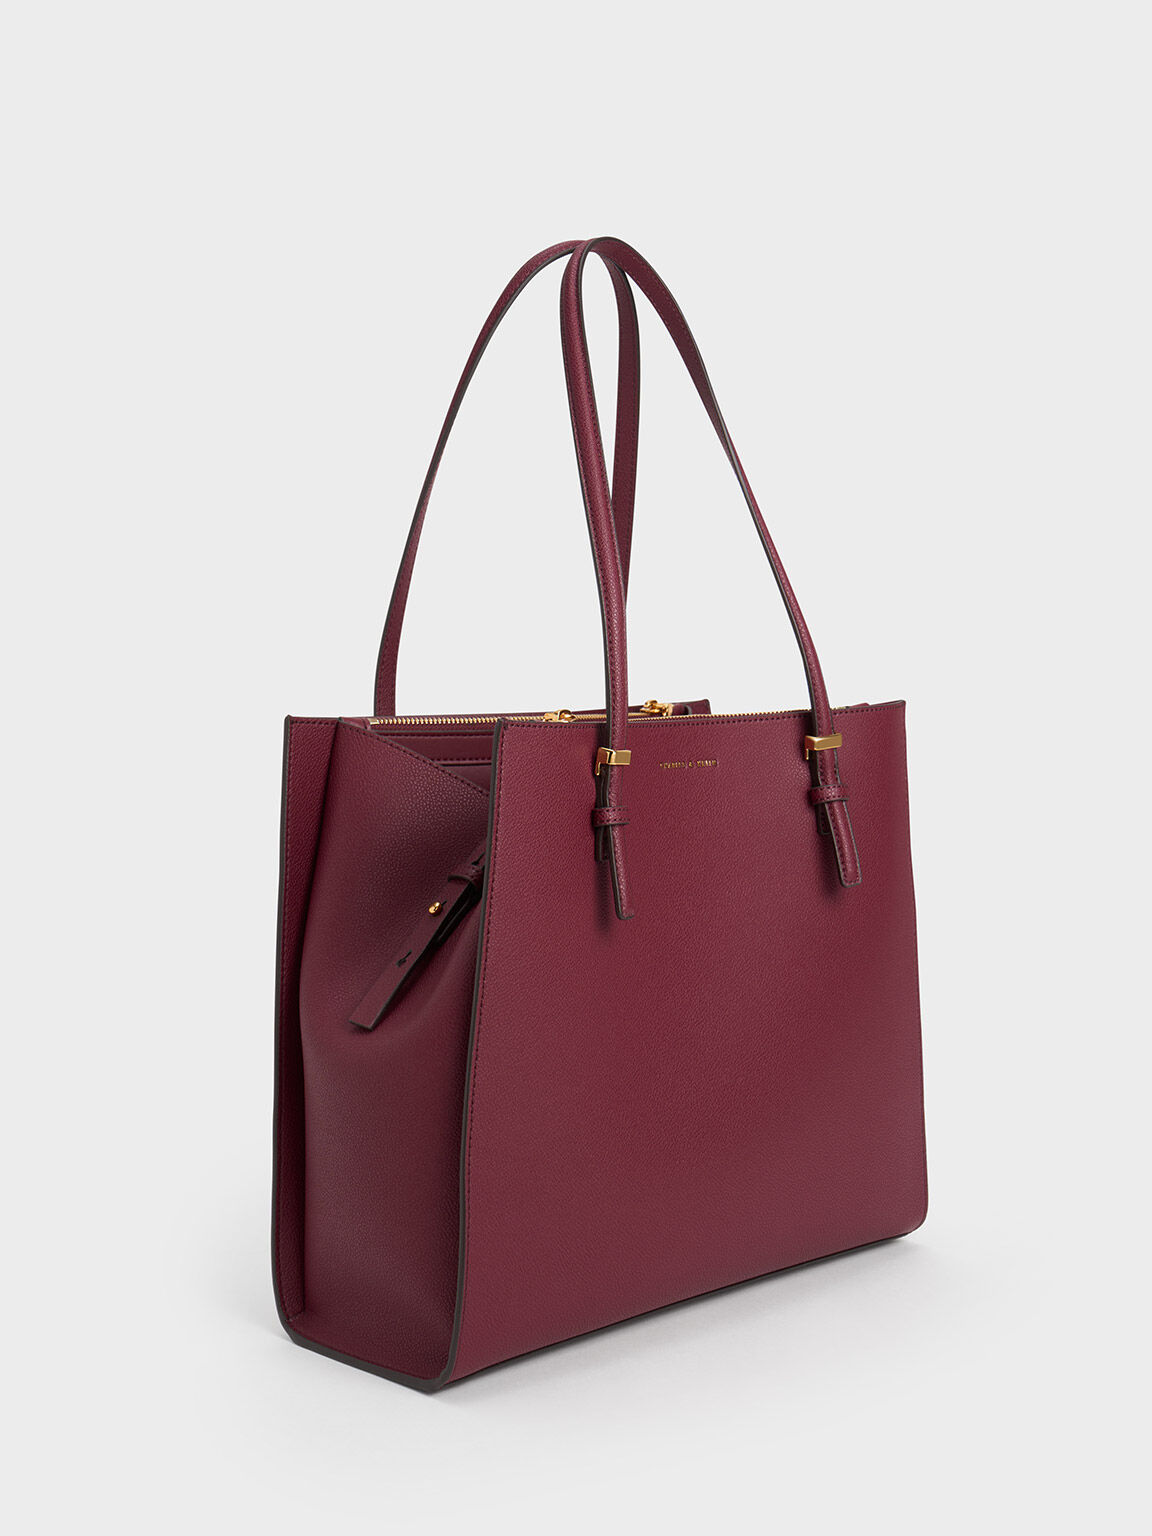 Handbags | Charles And Keith Hand Bag | Freeup